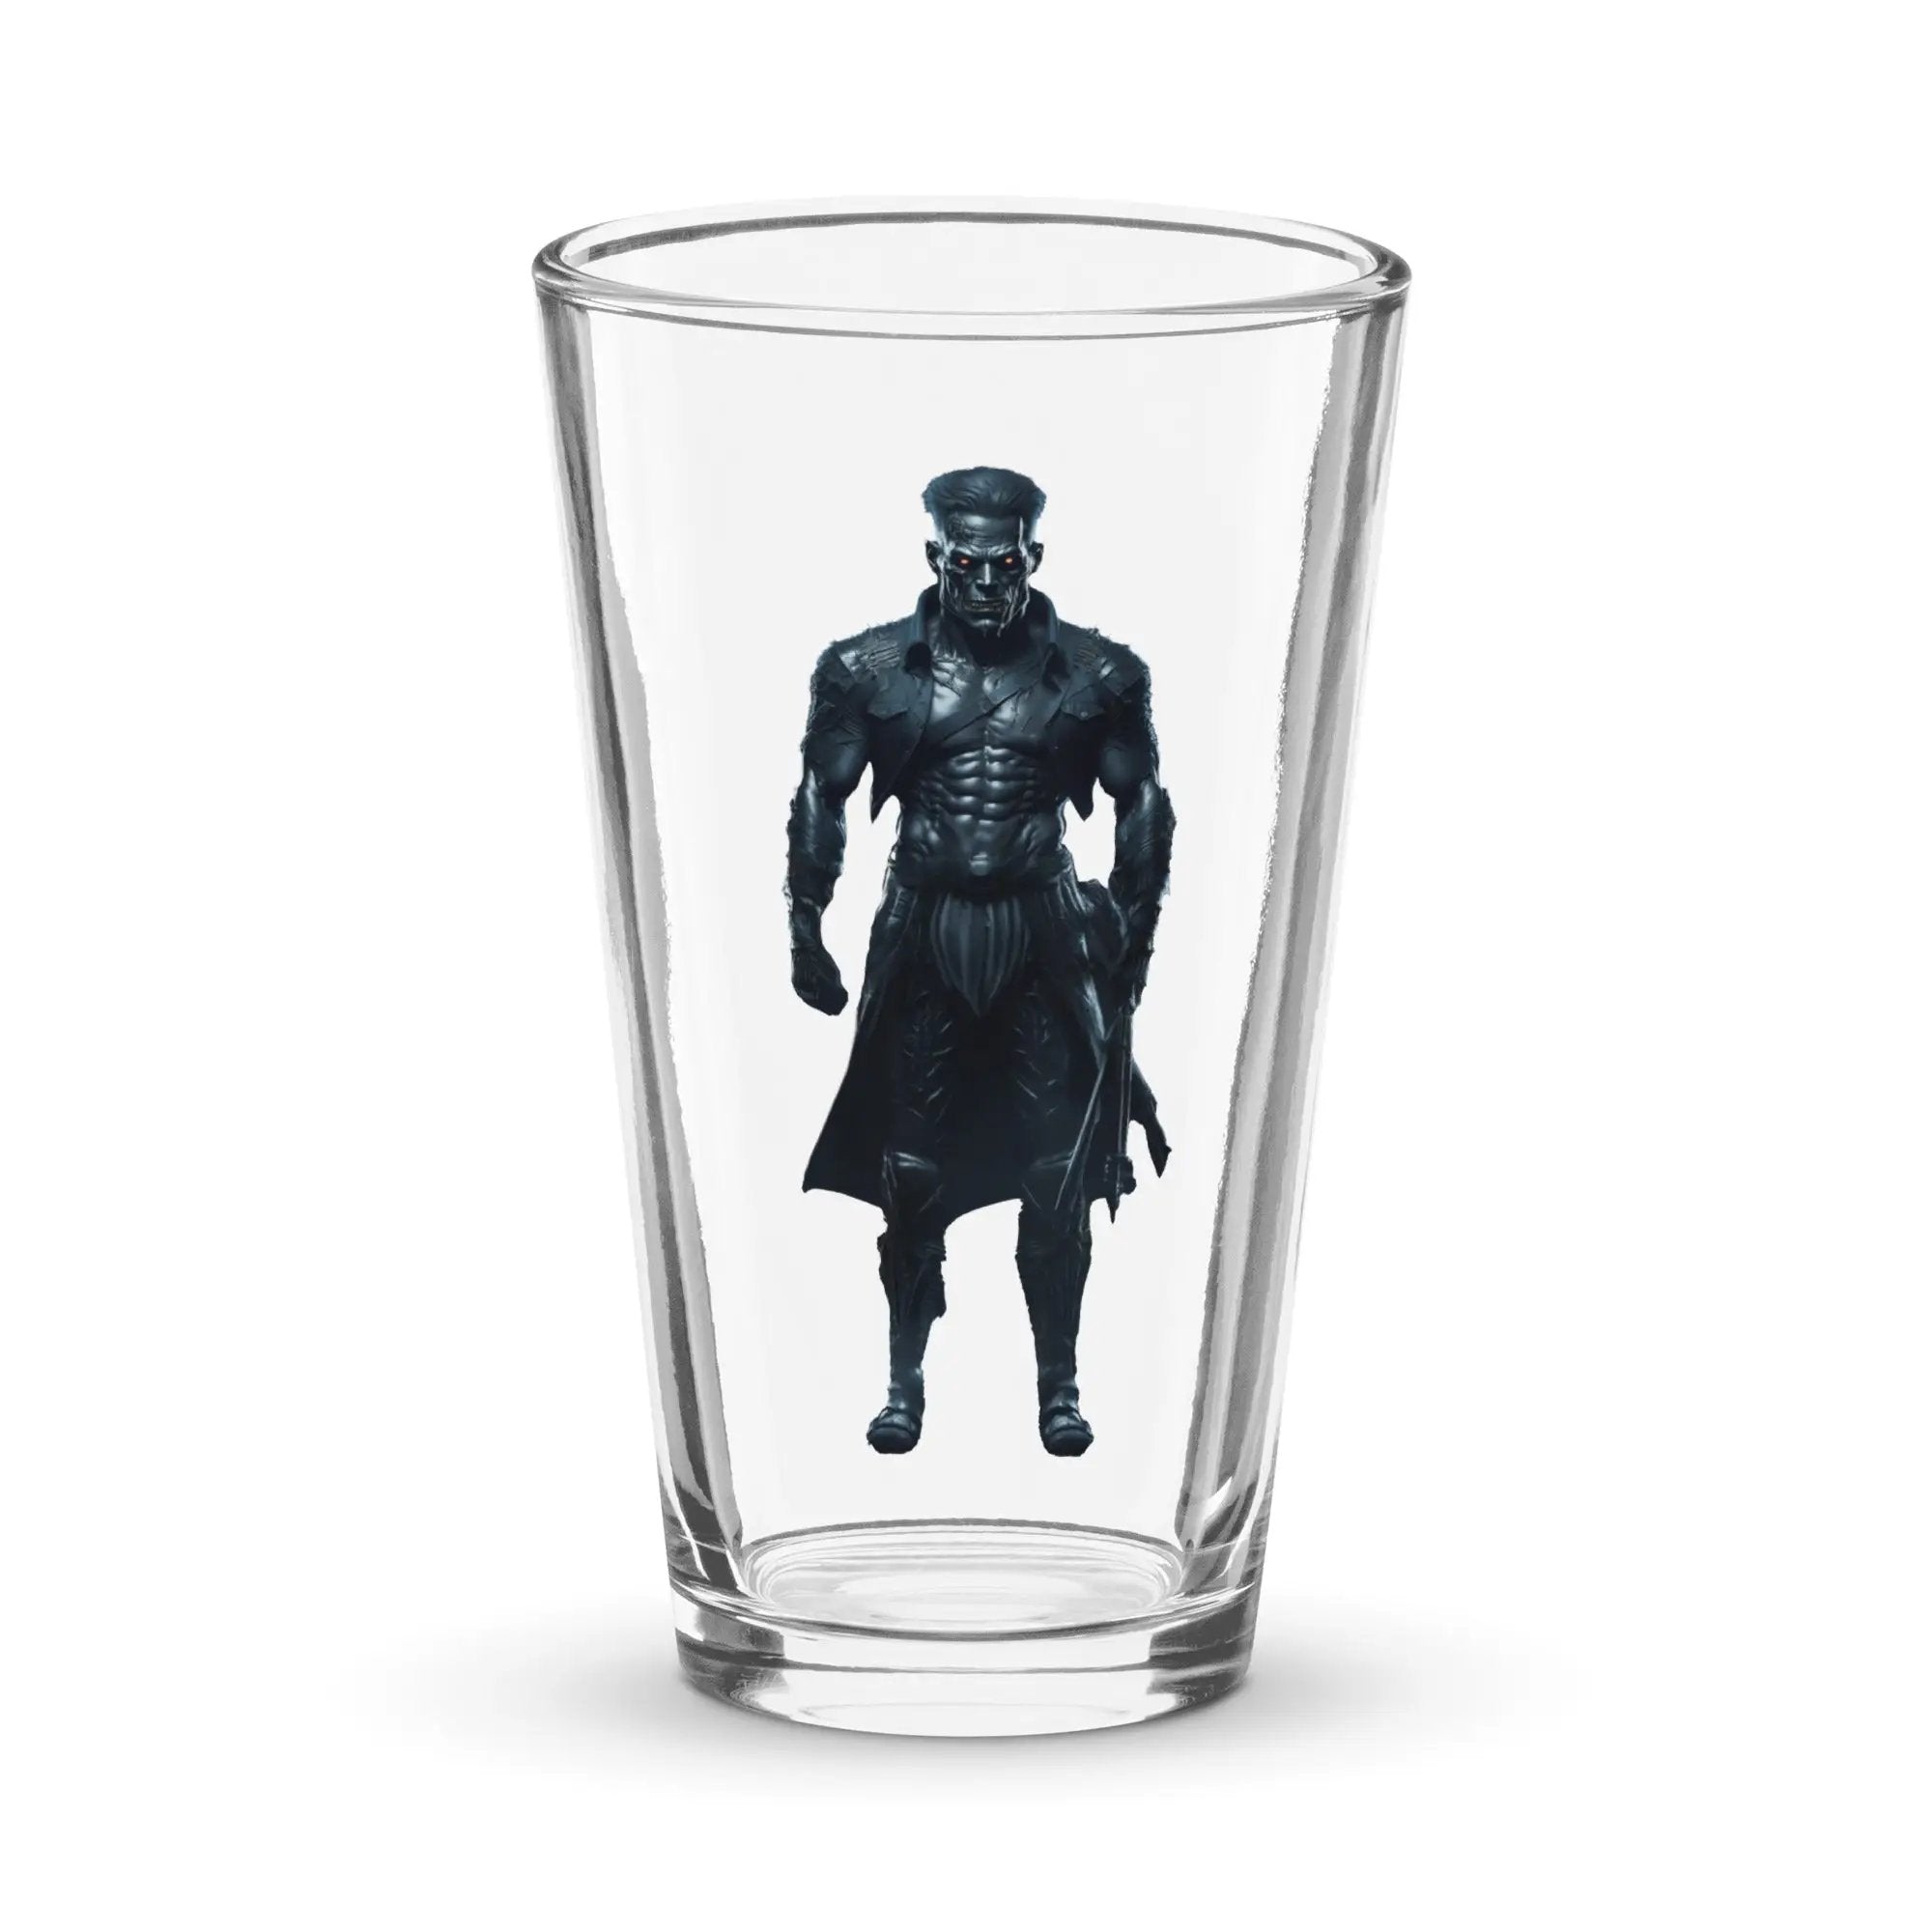 The Monster Squad "Frankenstein" Shaker Pint Glass